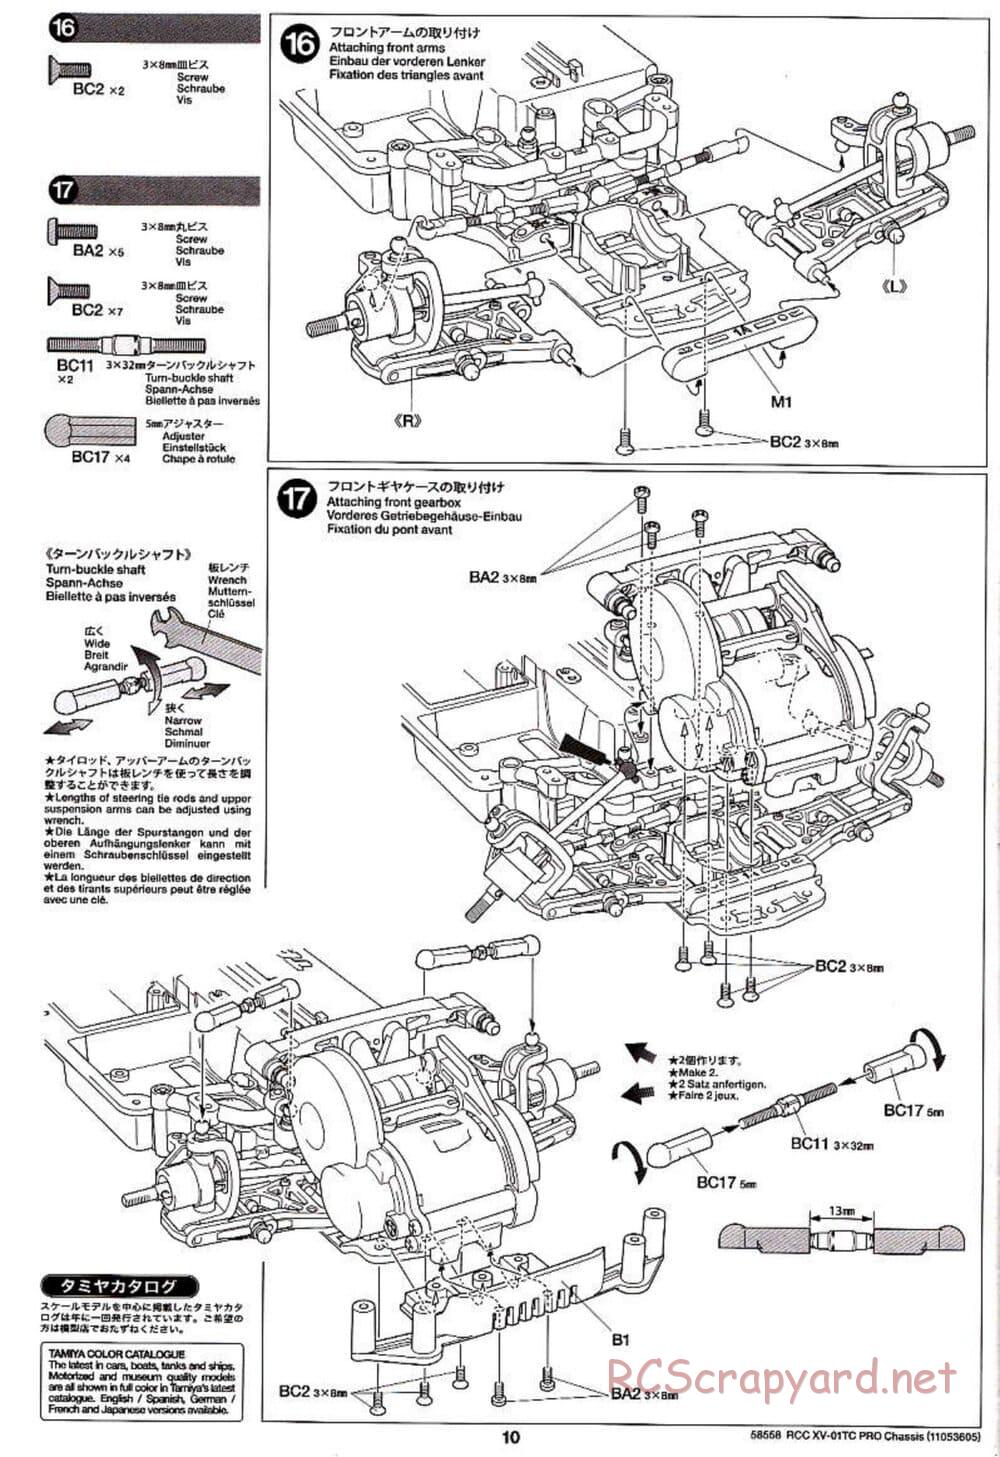 Tamiya - XV-01TC Chassis - Manual - Page 10